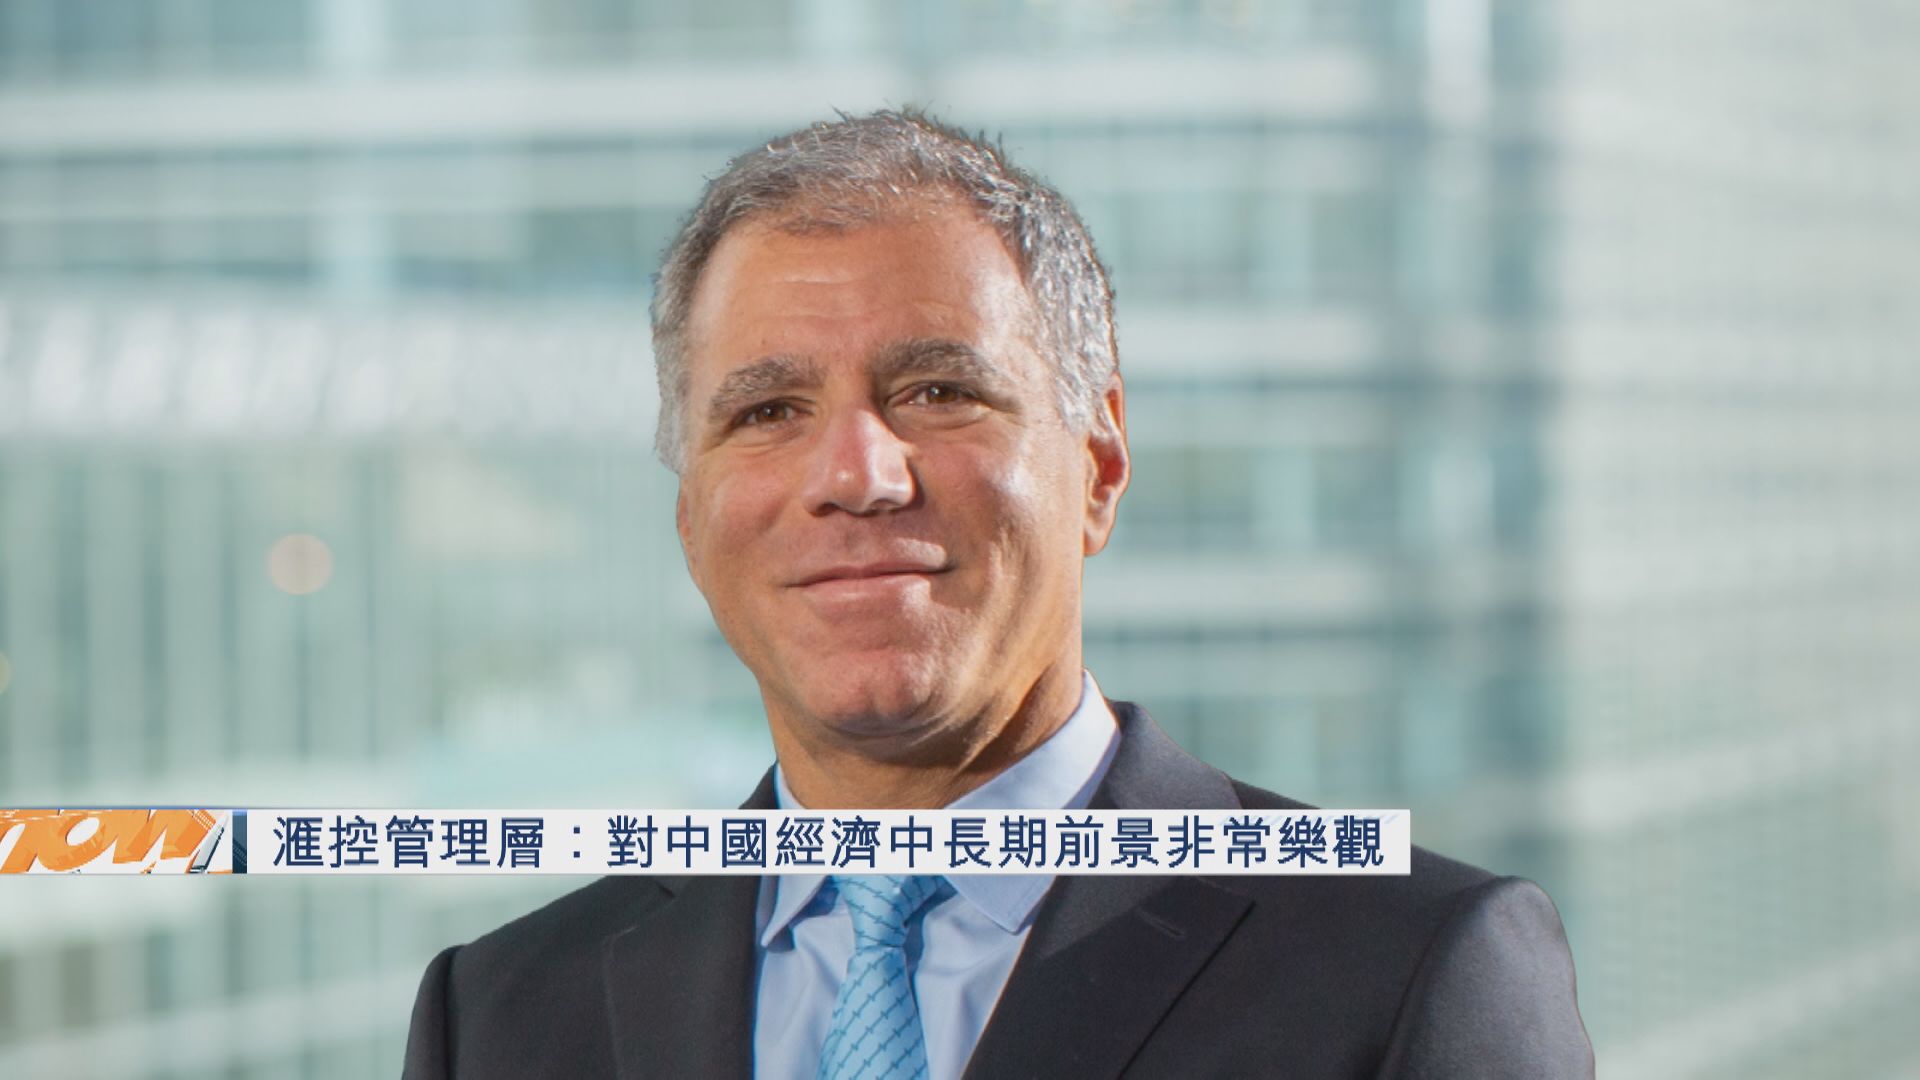 【轉型時機到】滙控CFO:對中國經濟前景非常樂觀